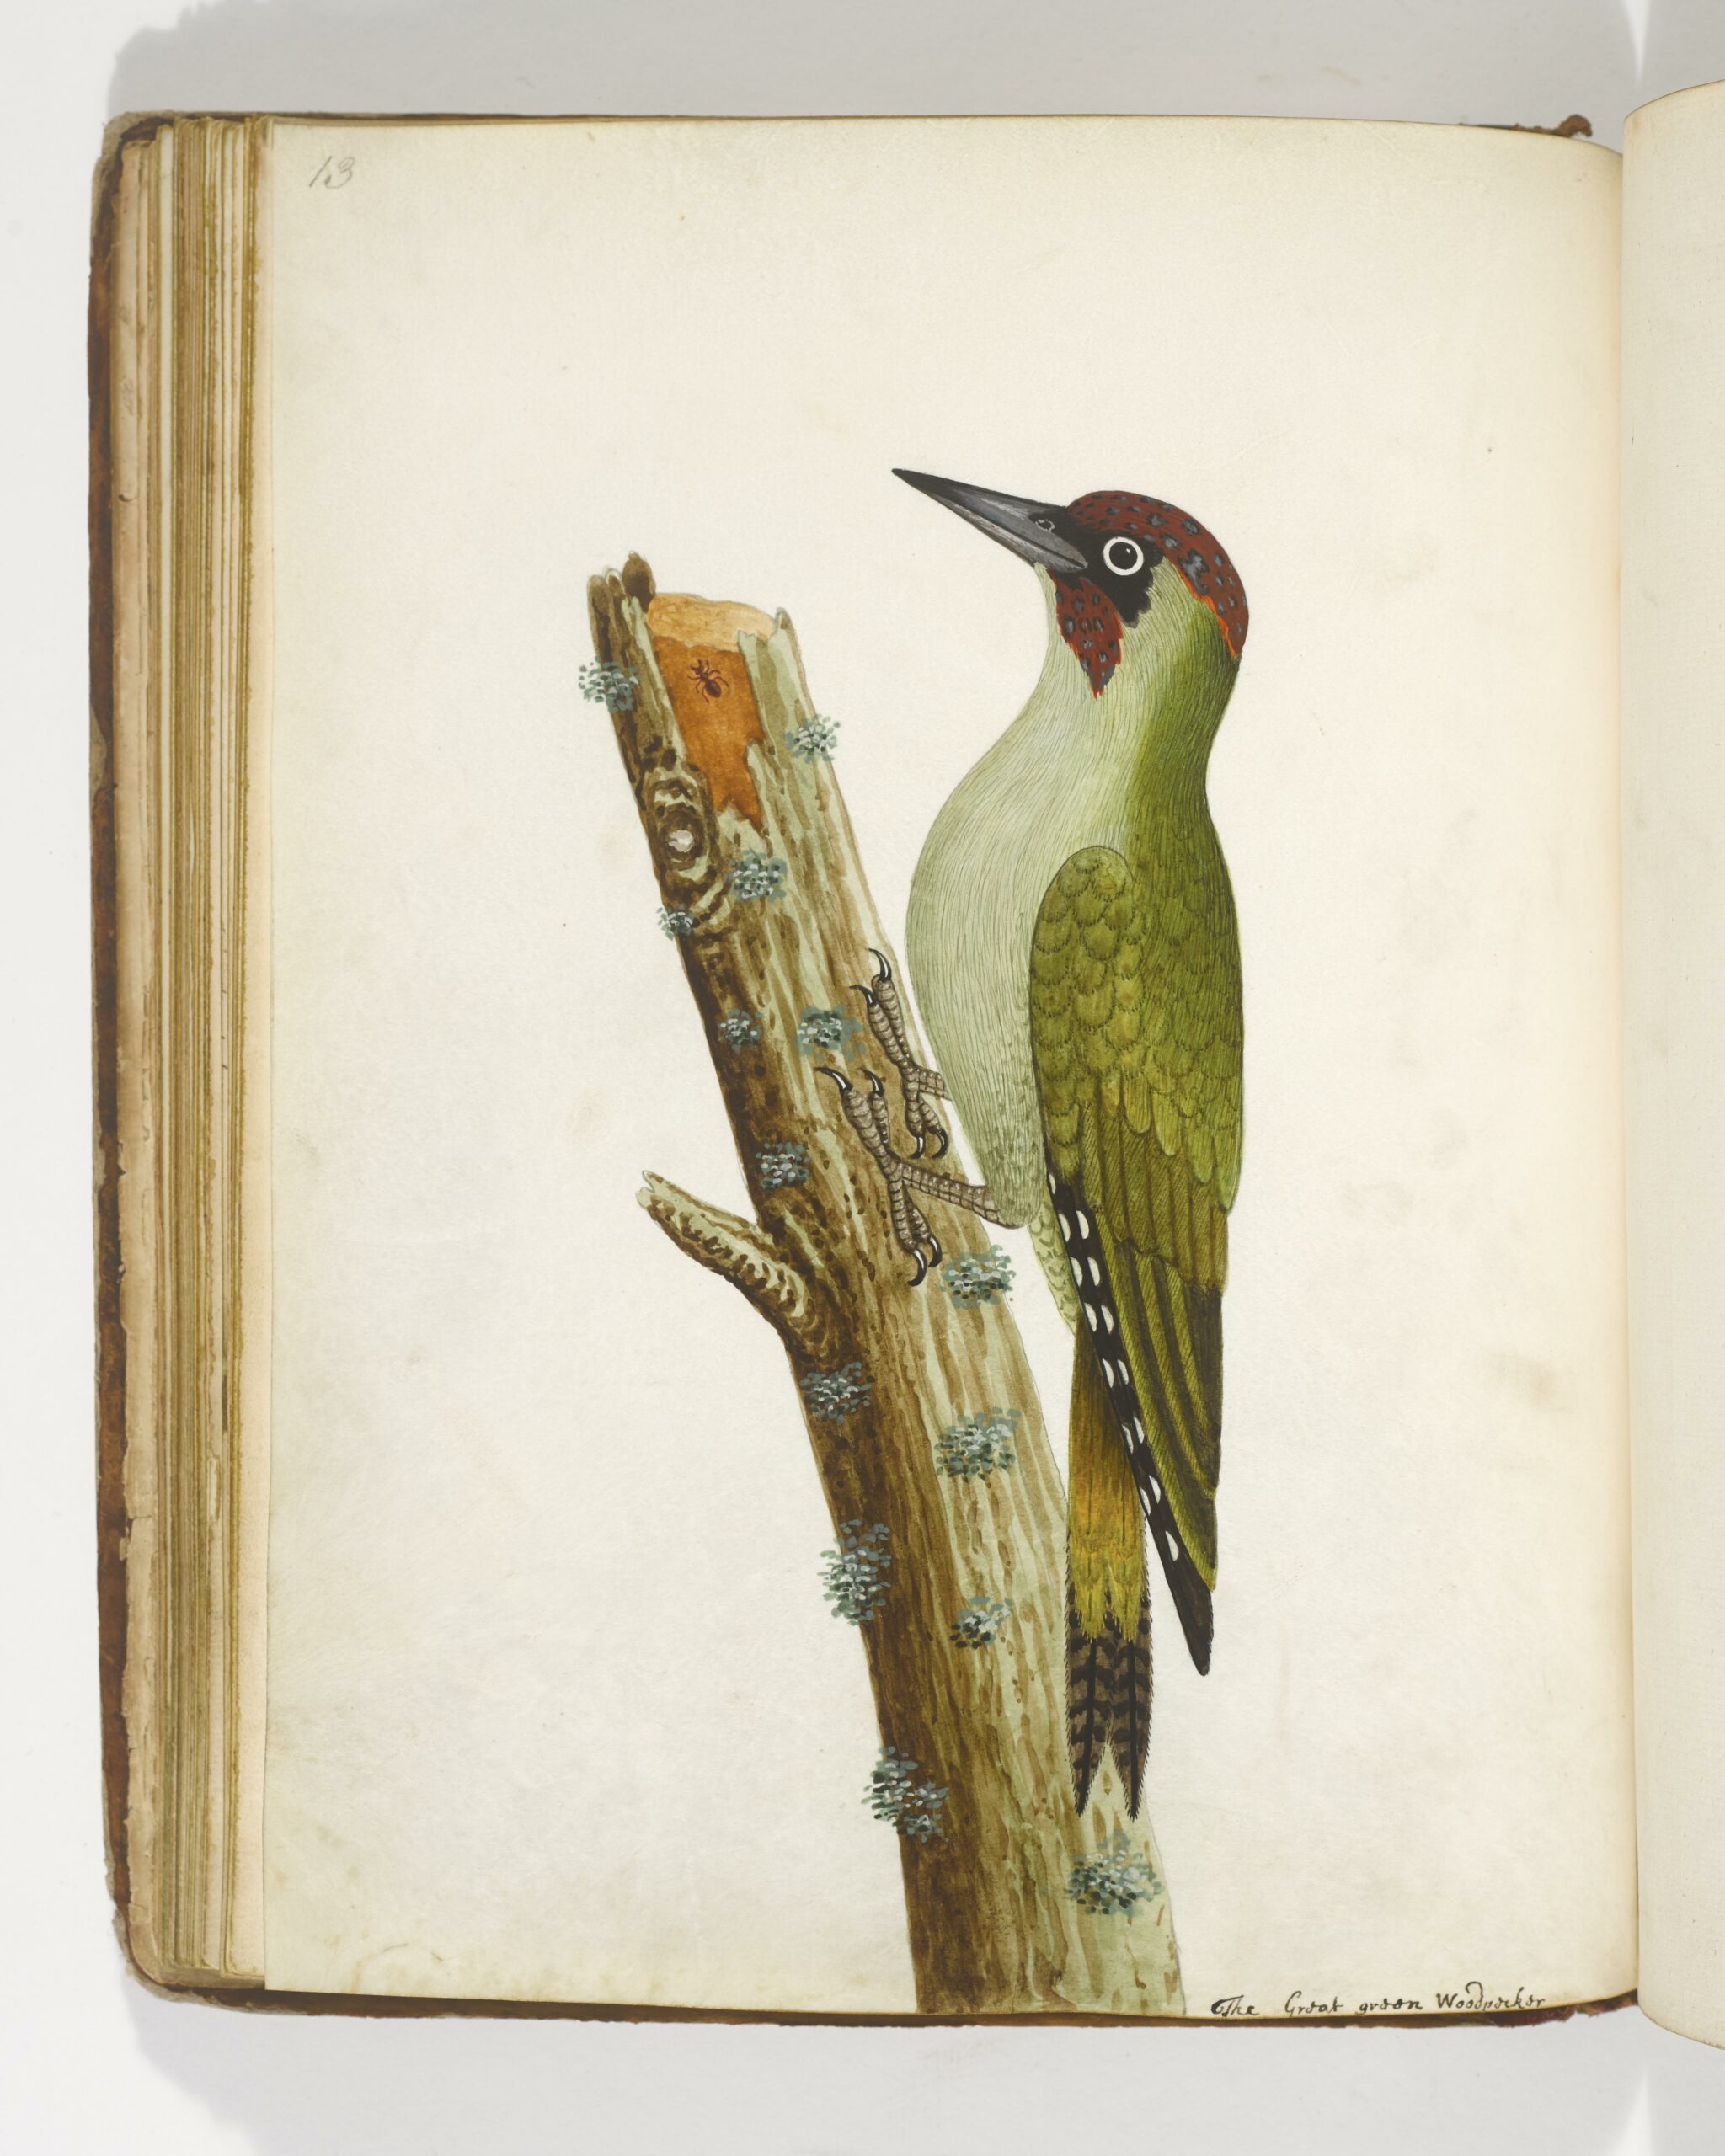 Green Woodpecker watercolour by Albin